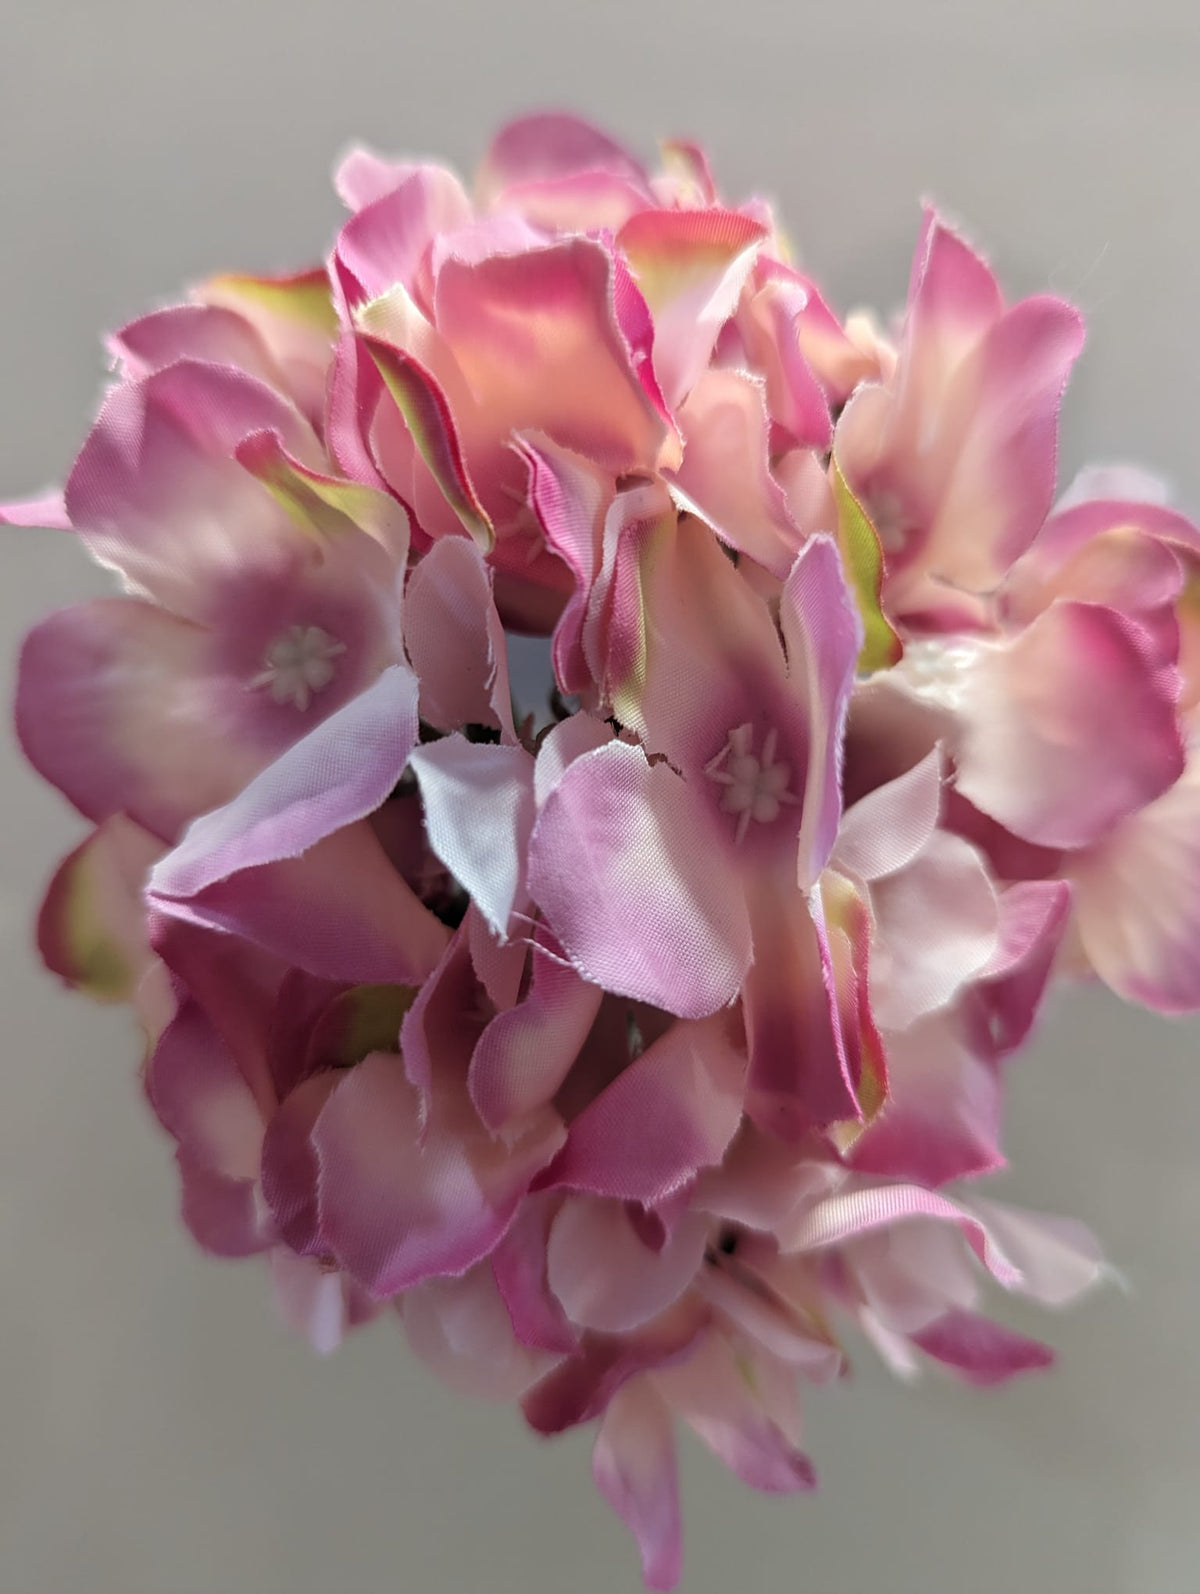 Single Hydrangea Flowerhead | Evergreen Silk Plants